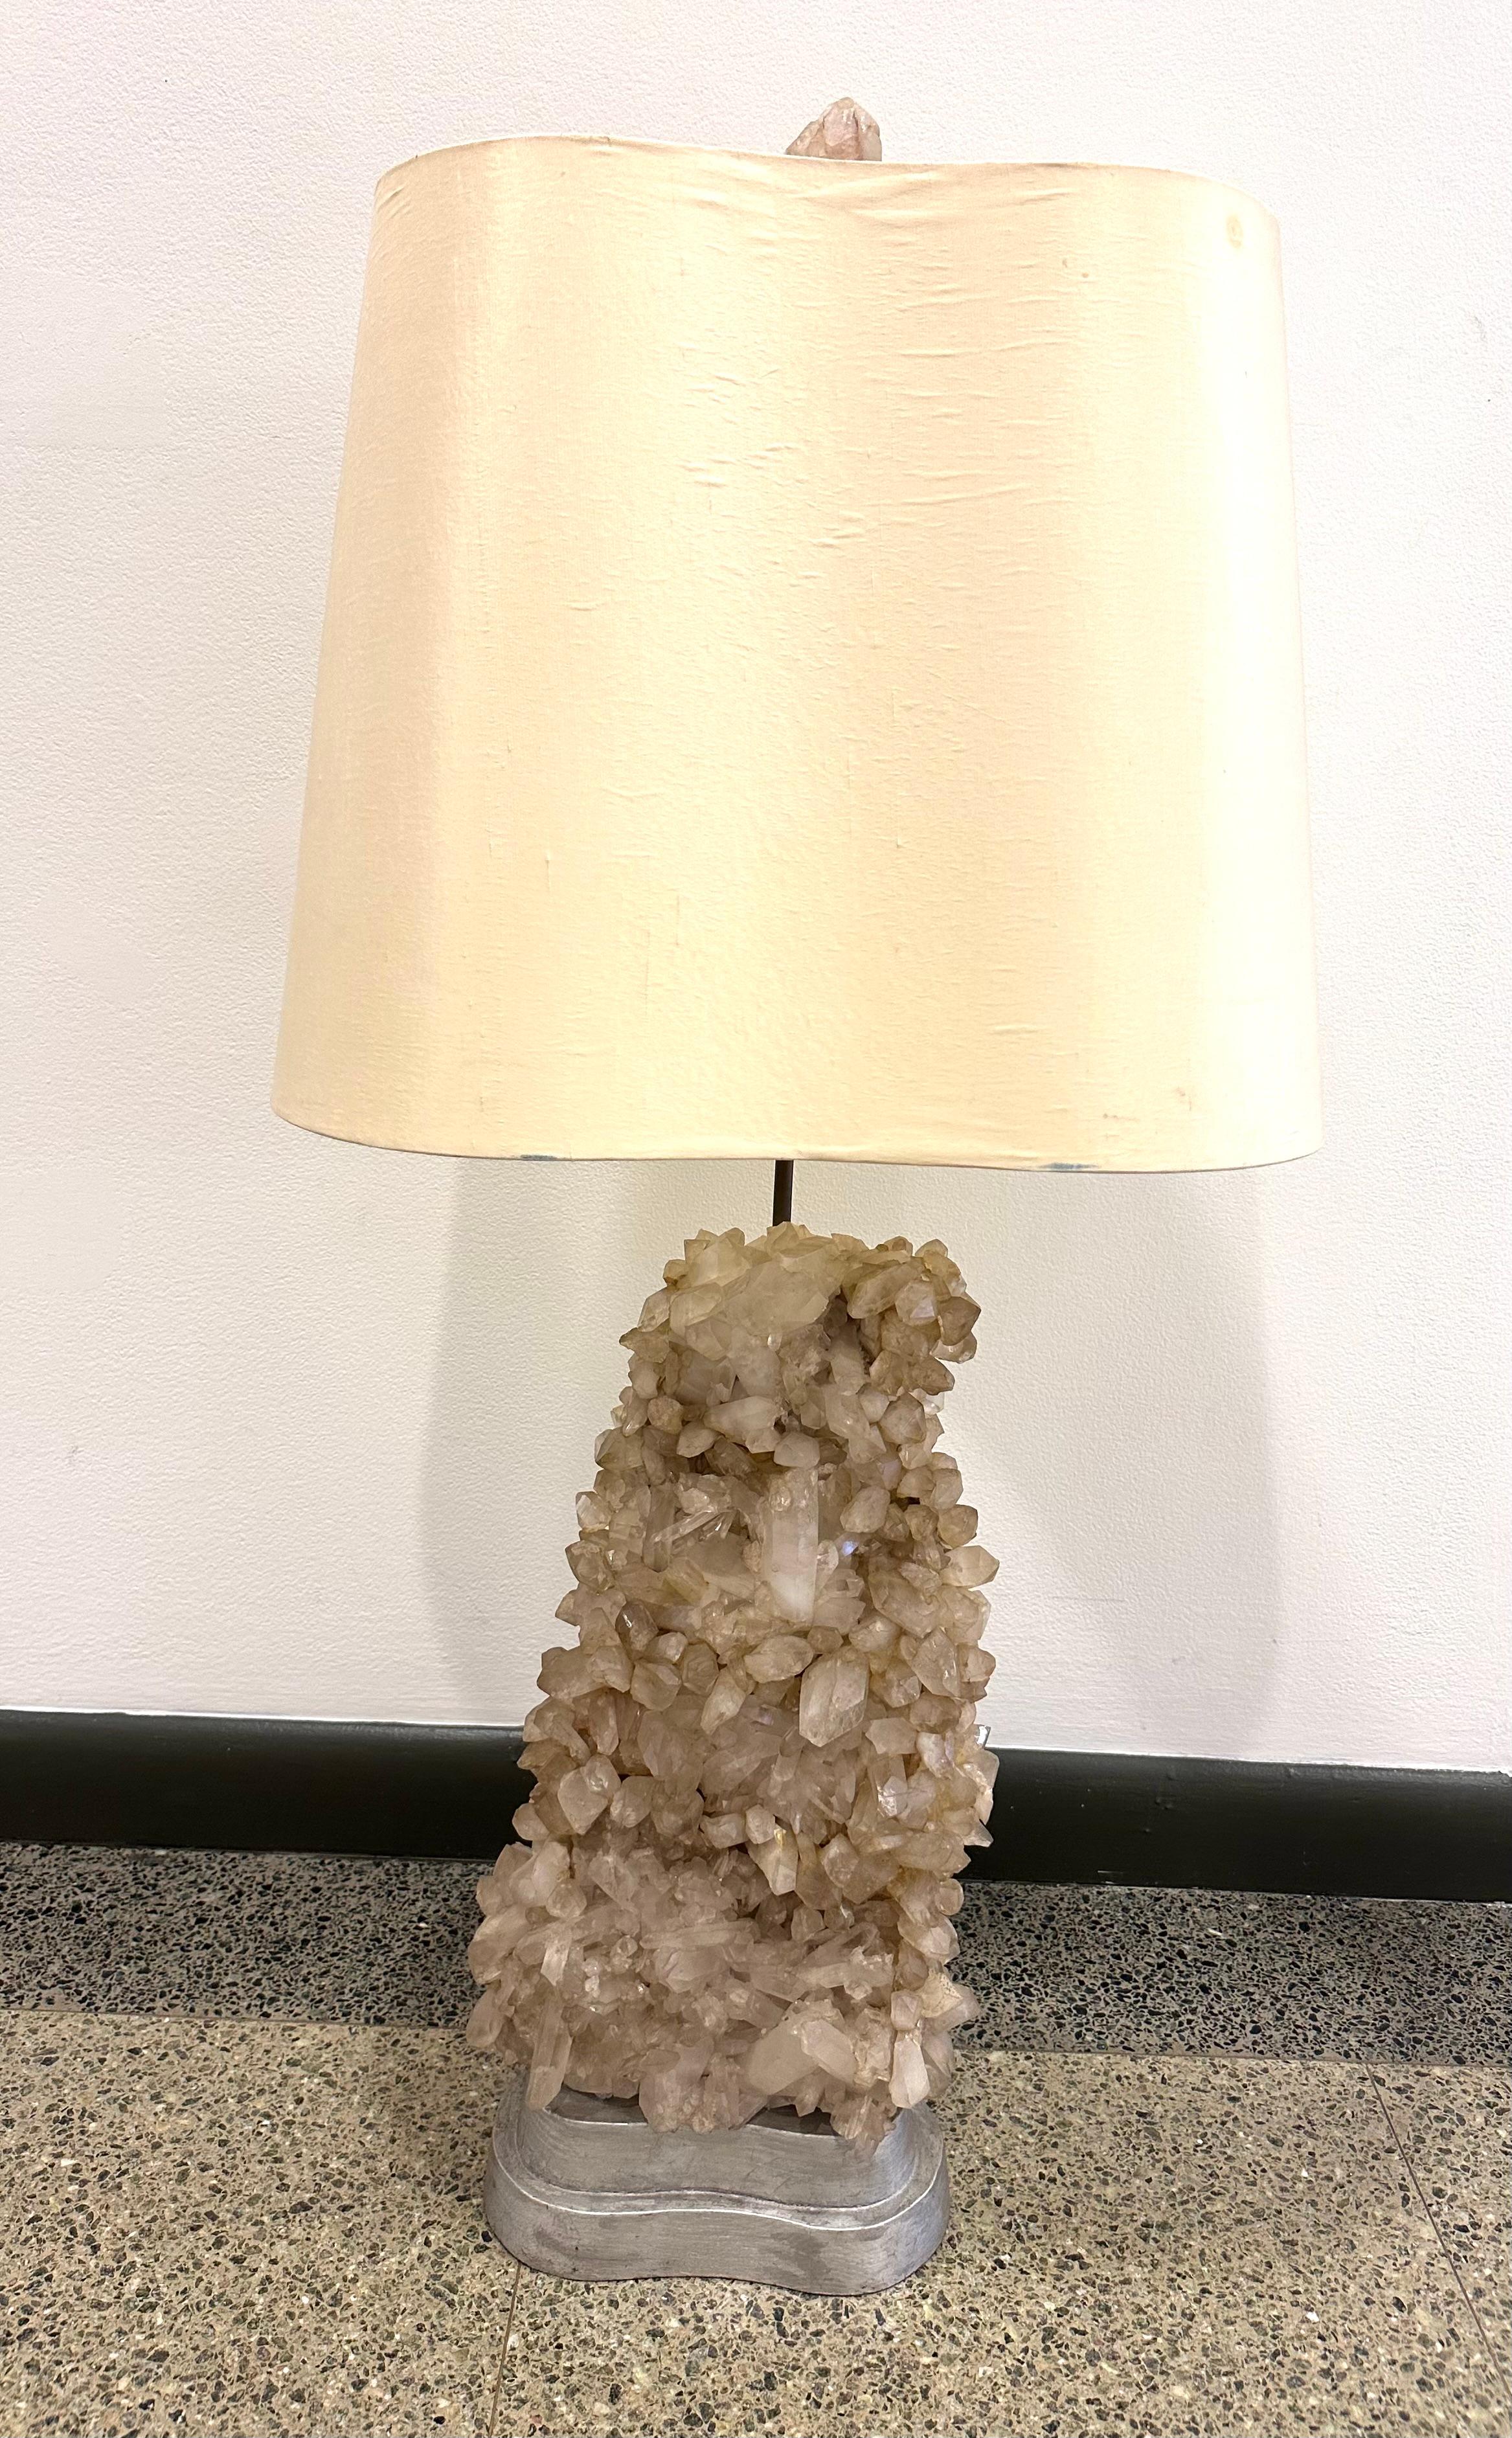 Großes Exemplar der klassischen, im Studio gefertigten Tischlampe von Carole Stupell. Der natürliche Quarzkristall ruht auf einem zweistufigen, bohnenförmigen Sockel aus versilbertem Holz. 

Der originale, maßgefertigte Schirm spiegelt die Form des